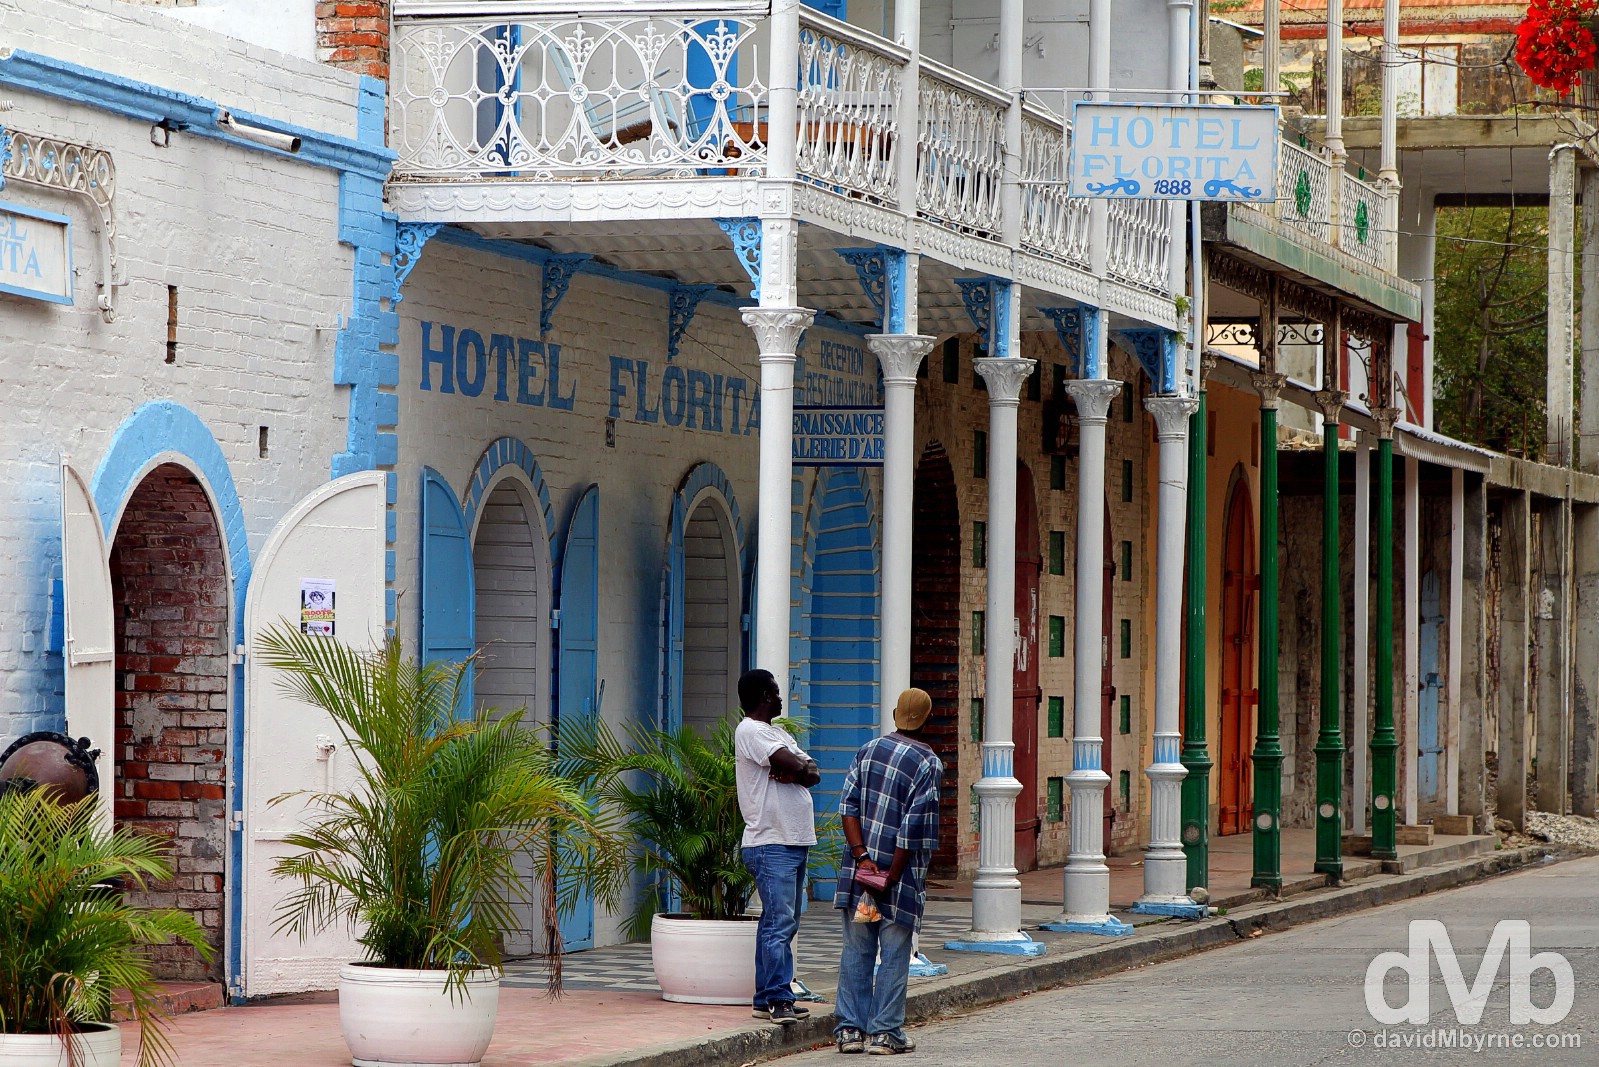 Rue de Commerce, Jacmel, Haiti. May 19, 2015.